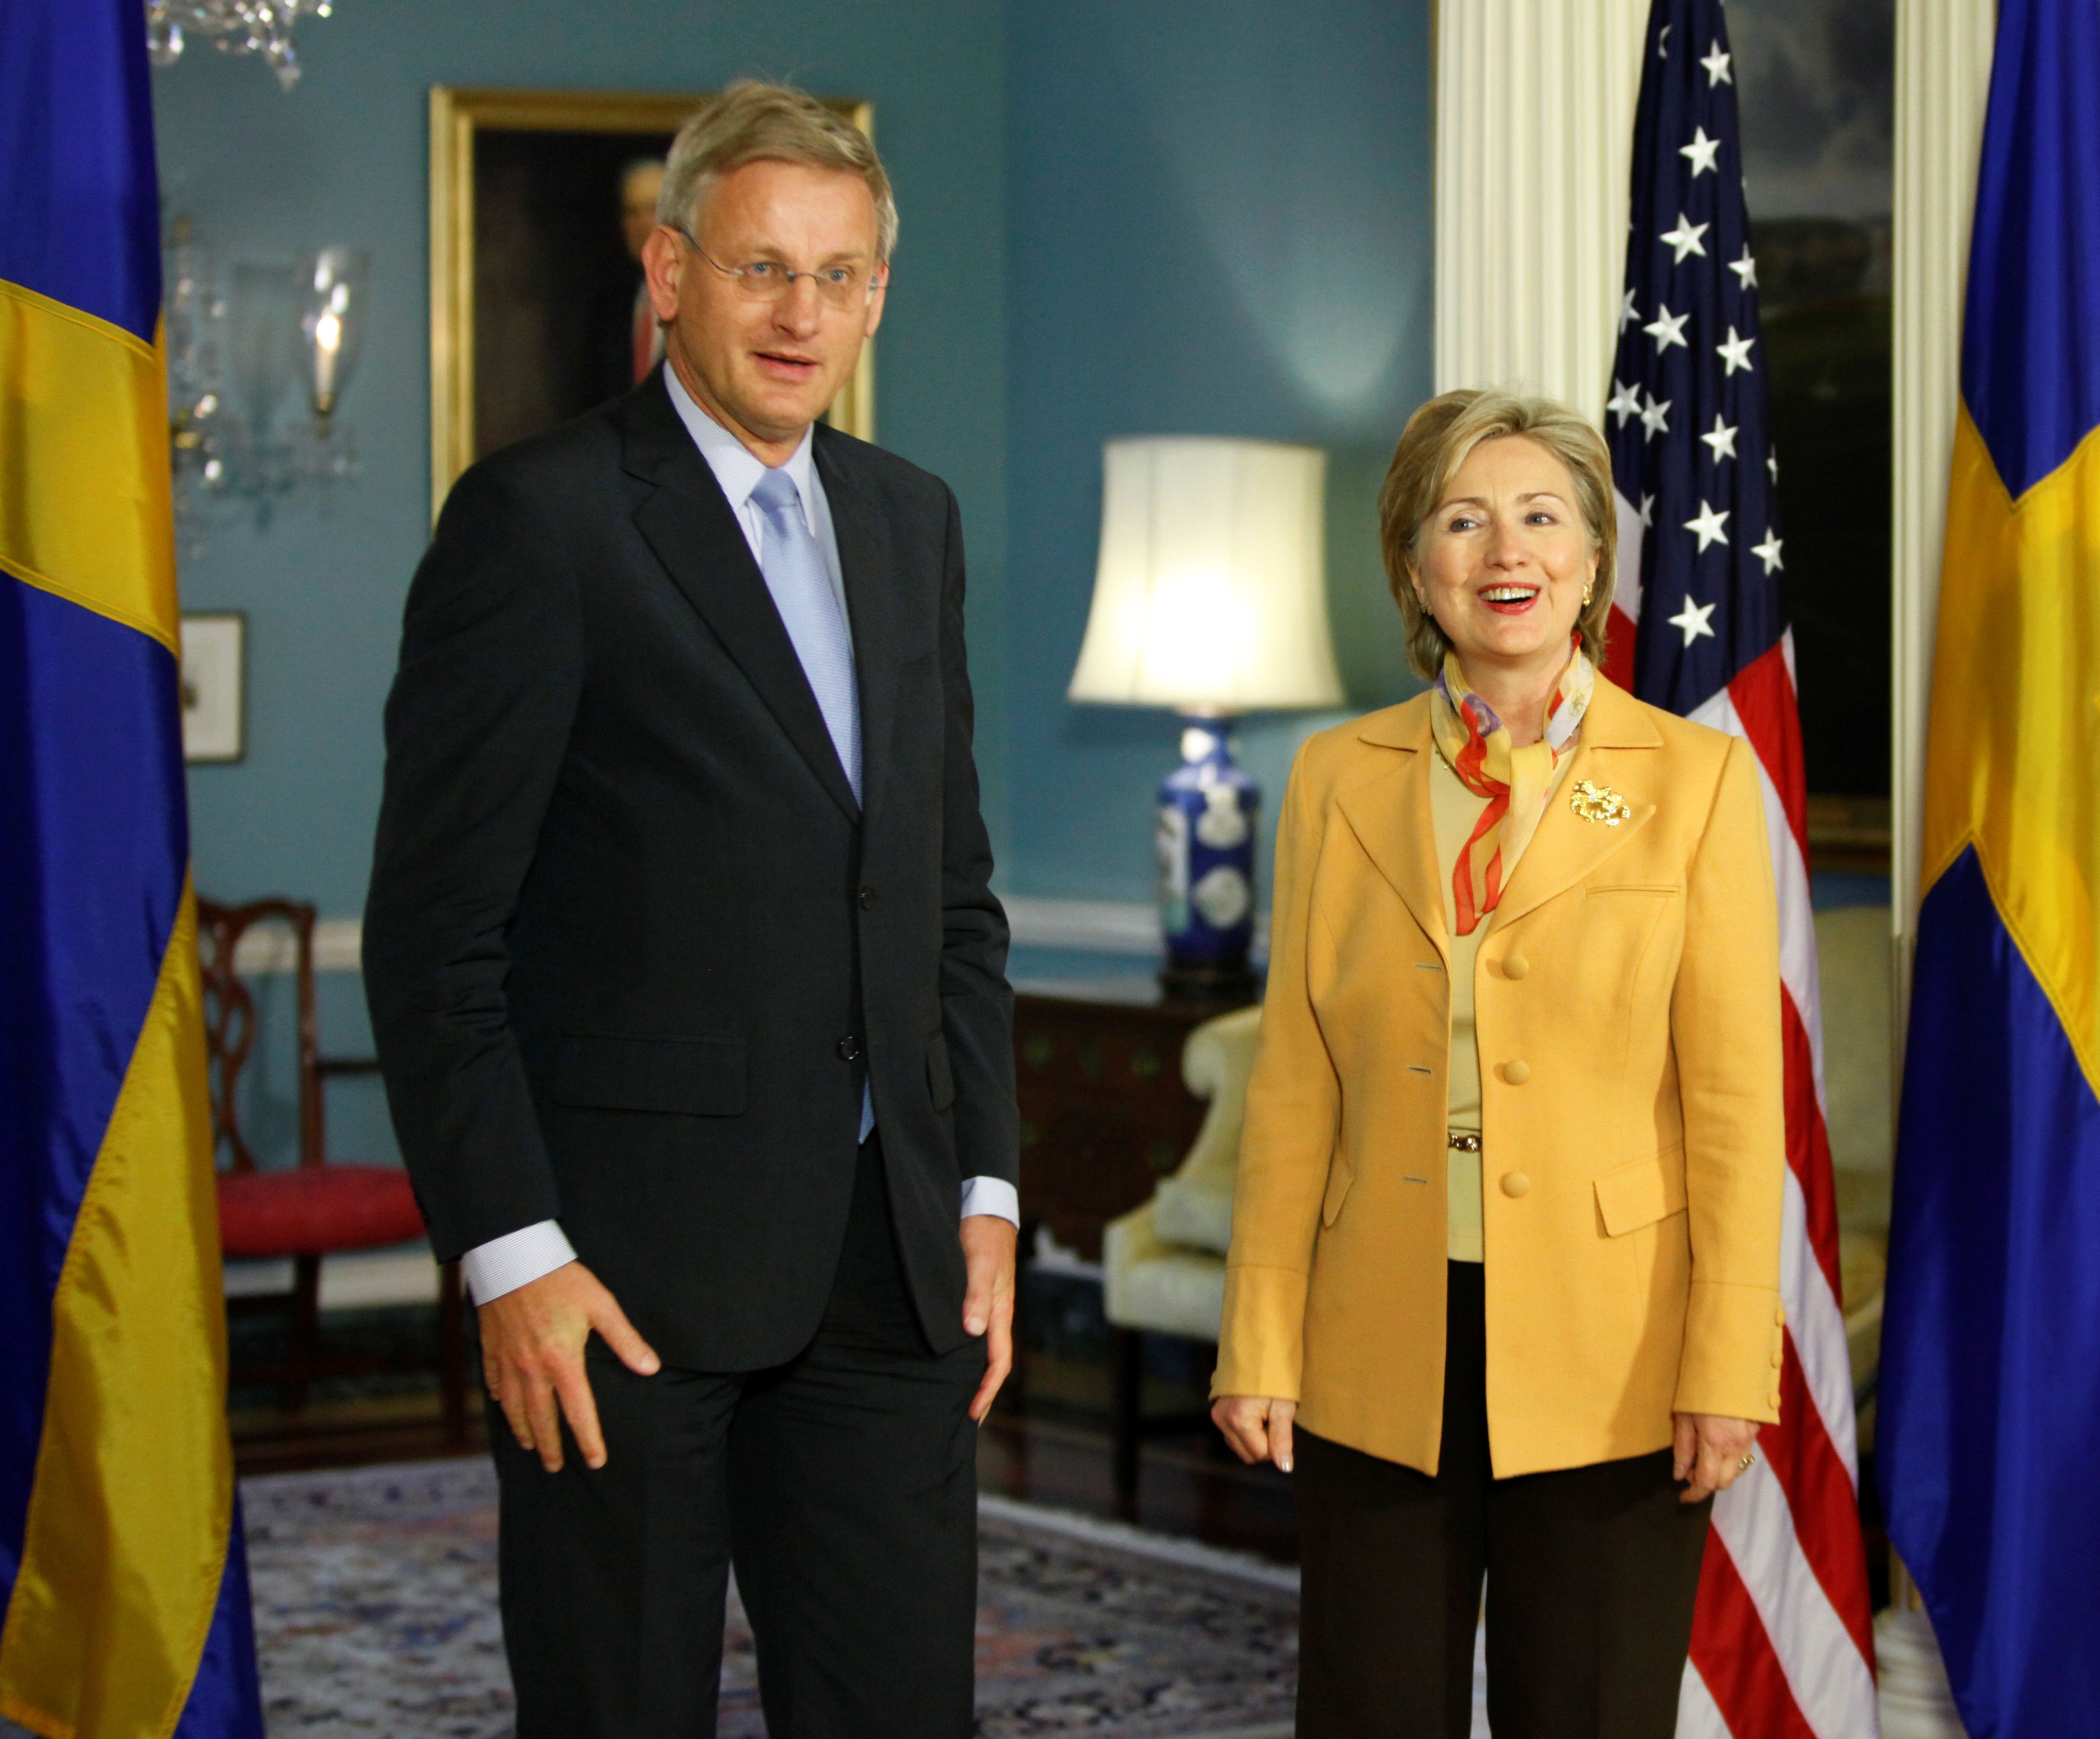 Carl Bildt på besök hos kollegan Hillary Clinton. Nu hävdar Wikileaks att de har dokument som avslöjar att Bildt varit informatör åt USA.